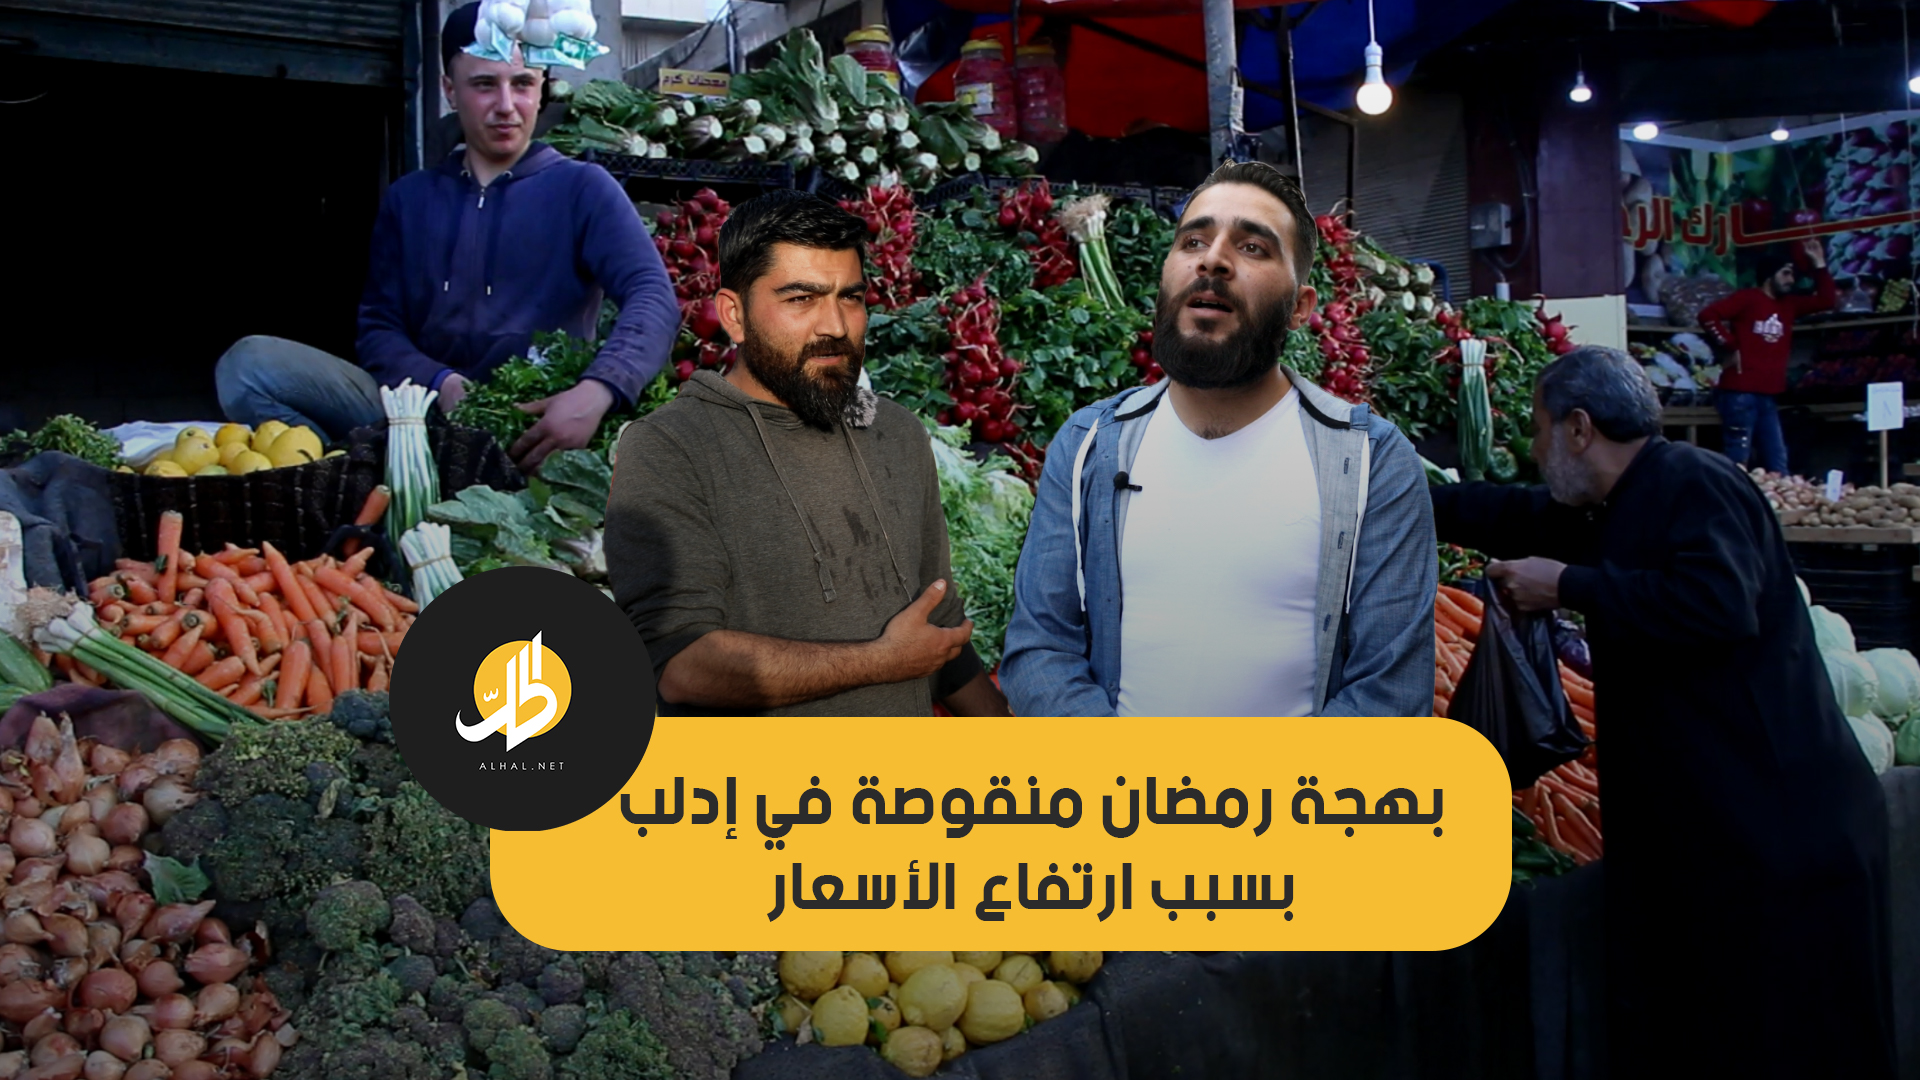 بهجة رمضان منقوصة في إدلب بسبب ارتفاع الأسعار